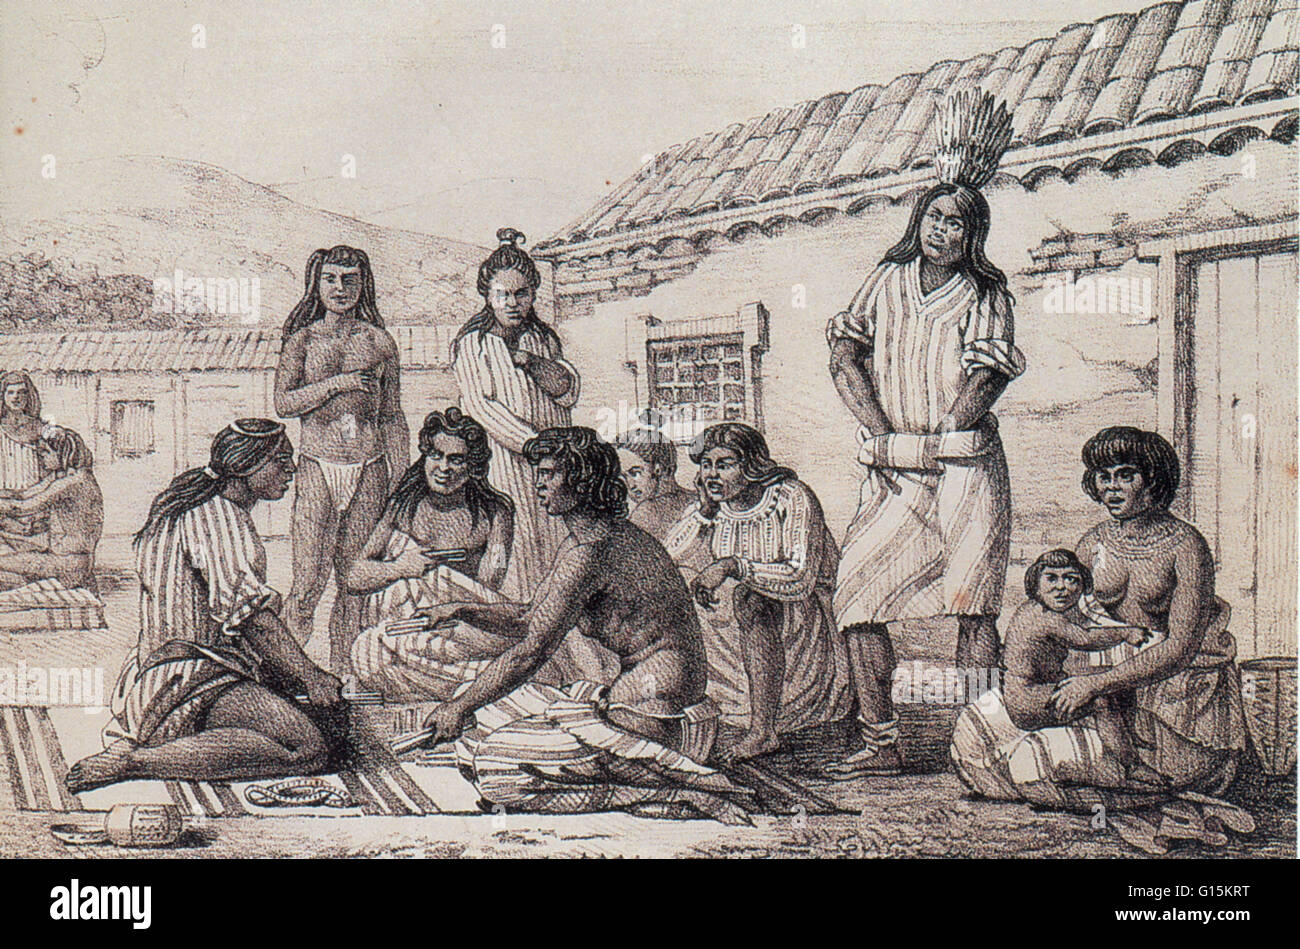 Illustration par l'artiste russe Louis Choris représentant un groupe d'Indiens de Californie 'Mission', les Amérindiens qui colons espagnols avaient été réinstallés à des missions, couvent-comme à la fin du xviiie et au début du 19e siècle. Ici ils sont pictur Banque D'Images